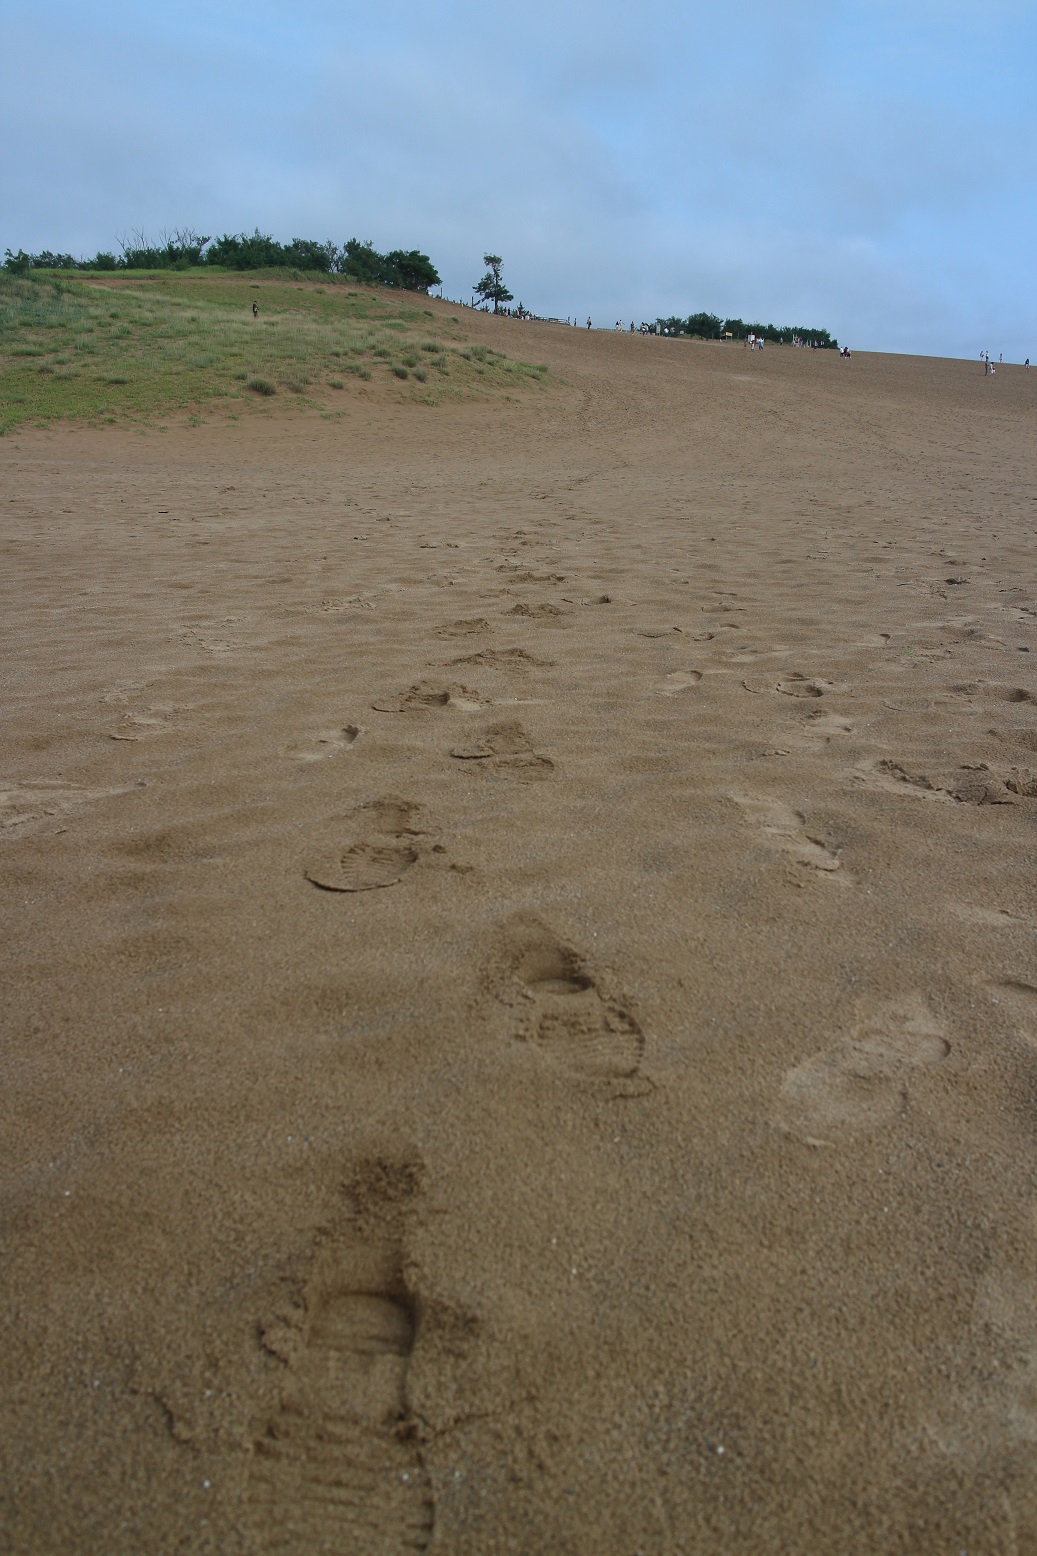 鳥取砂丘にて、サルの足跡